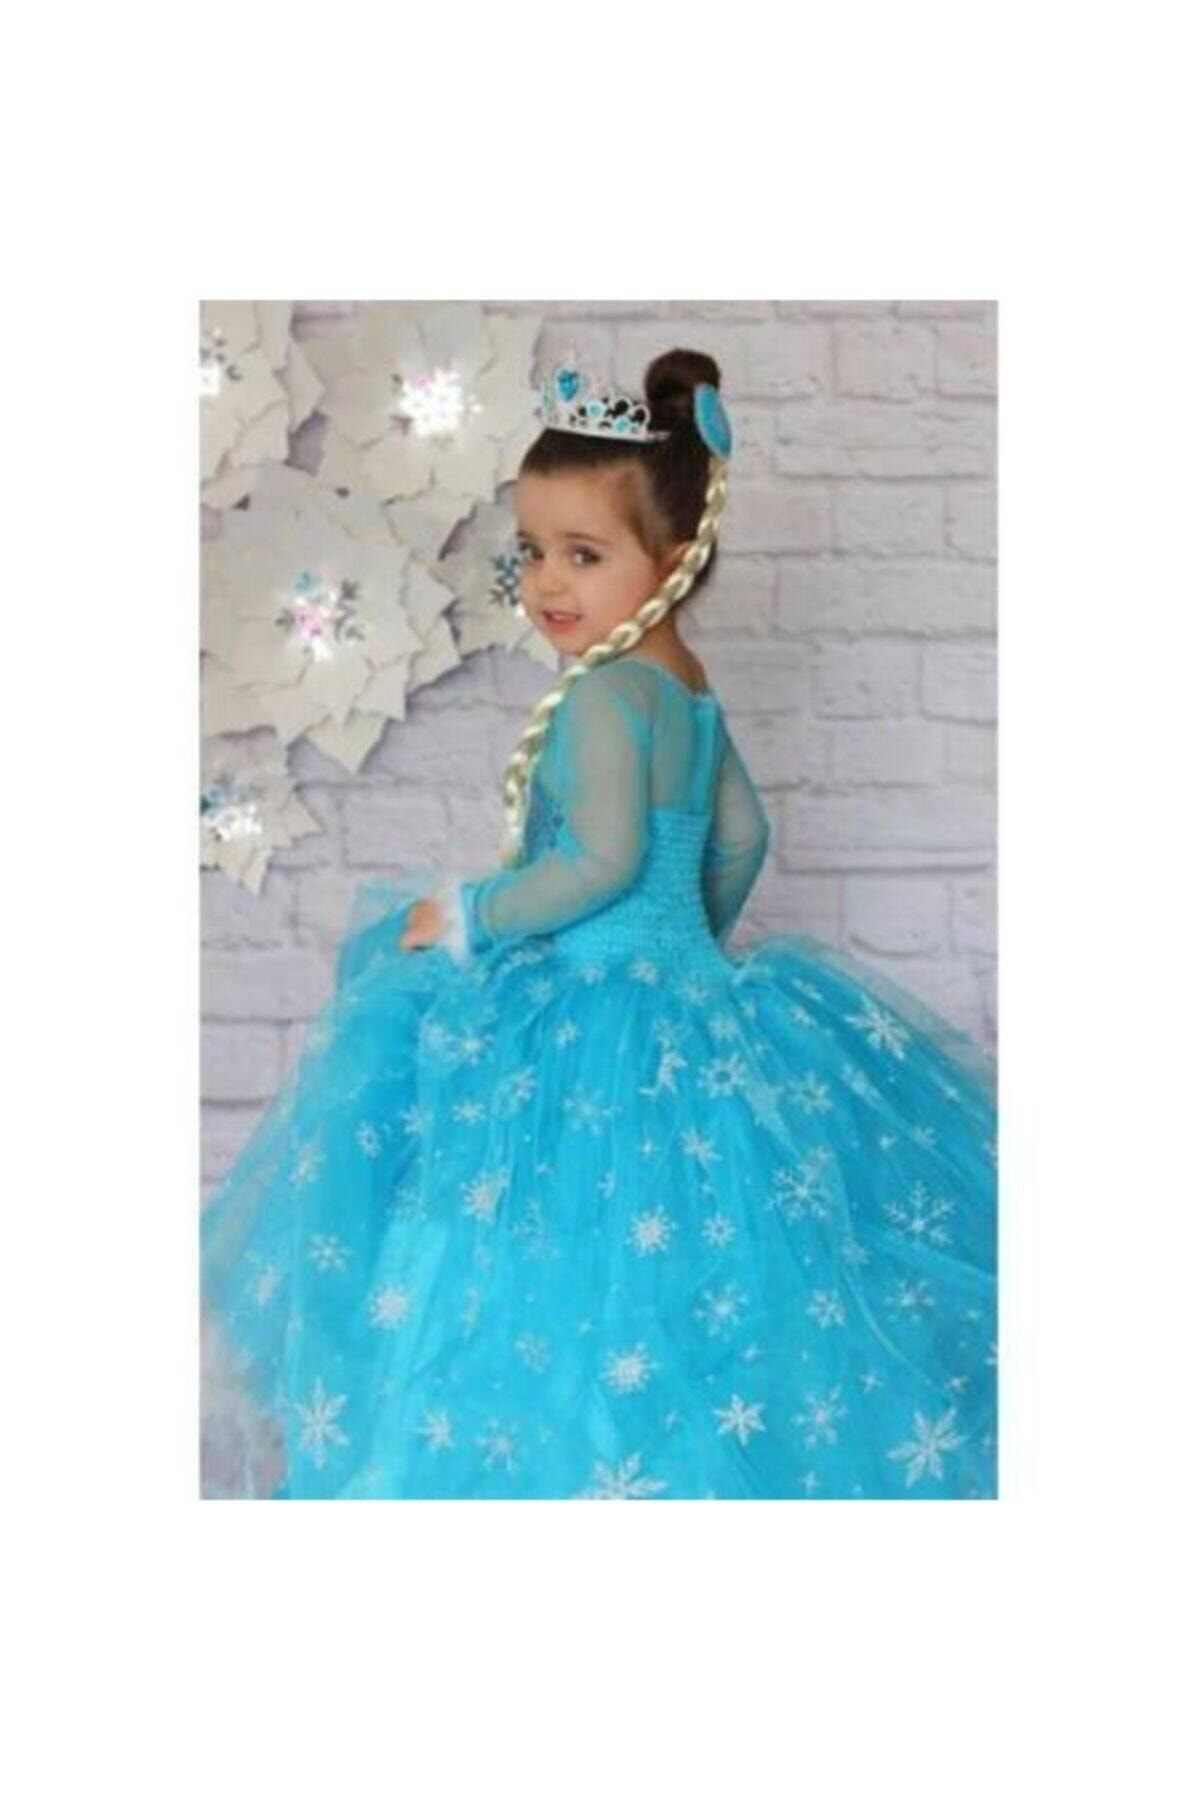 DUHATEKS Tarlatanlı Elsa Kostümü, Karlar Ülkesi Anna Kostümü, Kız Çocuk Elbisesi